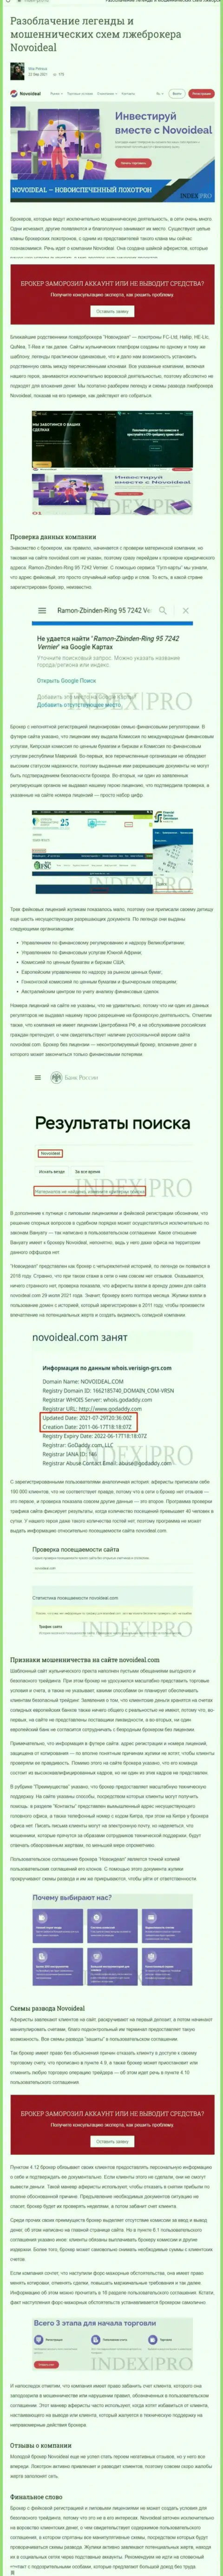 NovoIdeal - МАХИНАТОРЫ !!! публикация со свидетельством противозаконных манипуляций